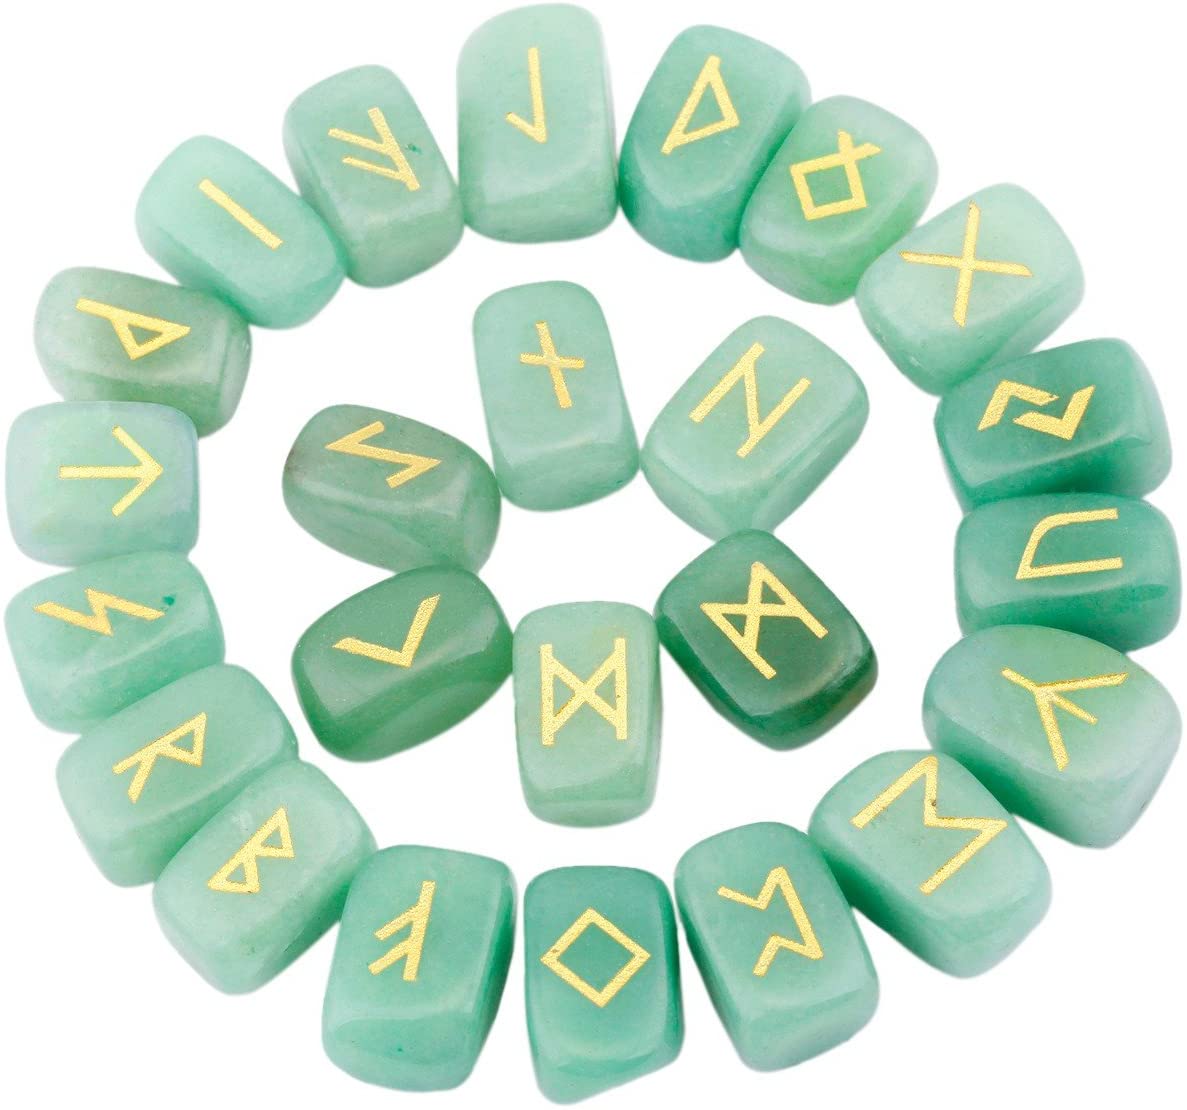 Light green AV runes